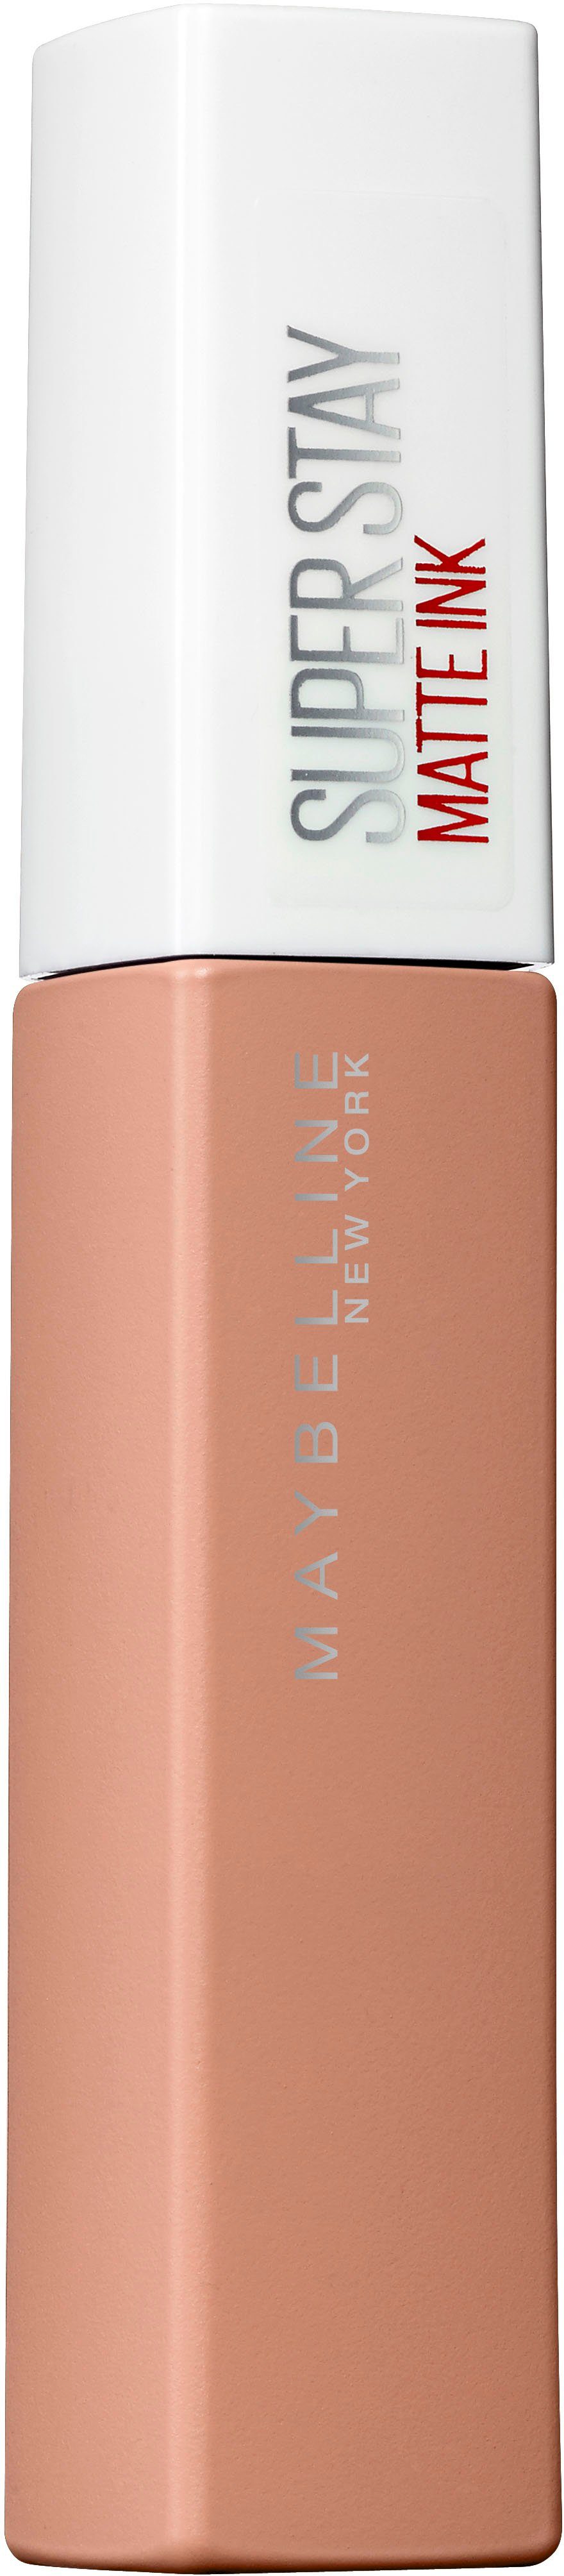 MAYBELLINE NEW YORK Lippenstift Super Ink Nude, Finish angesagtem Stay mit Farbpigmente Hochkonzentrierte Matte mattem